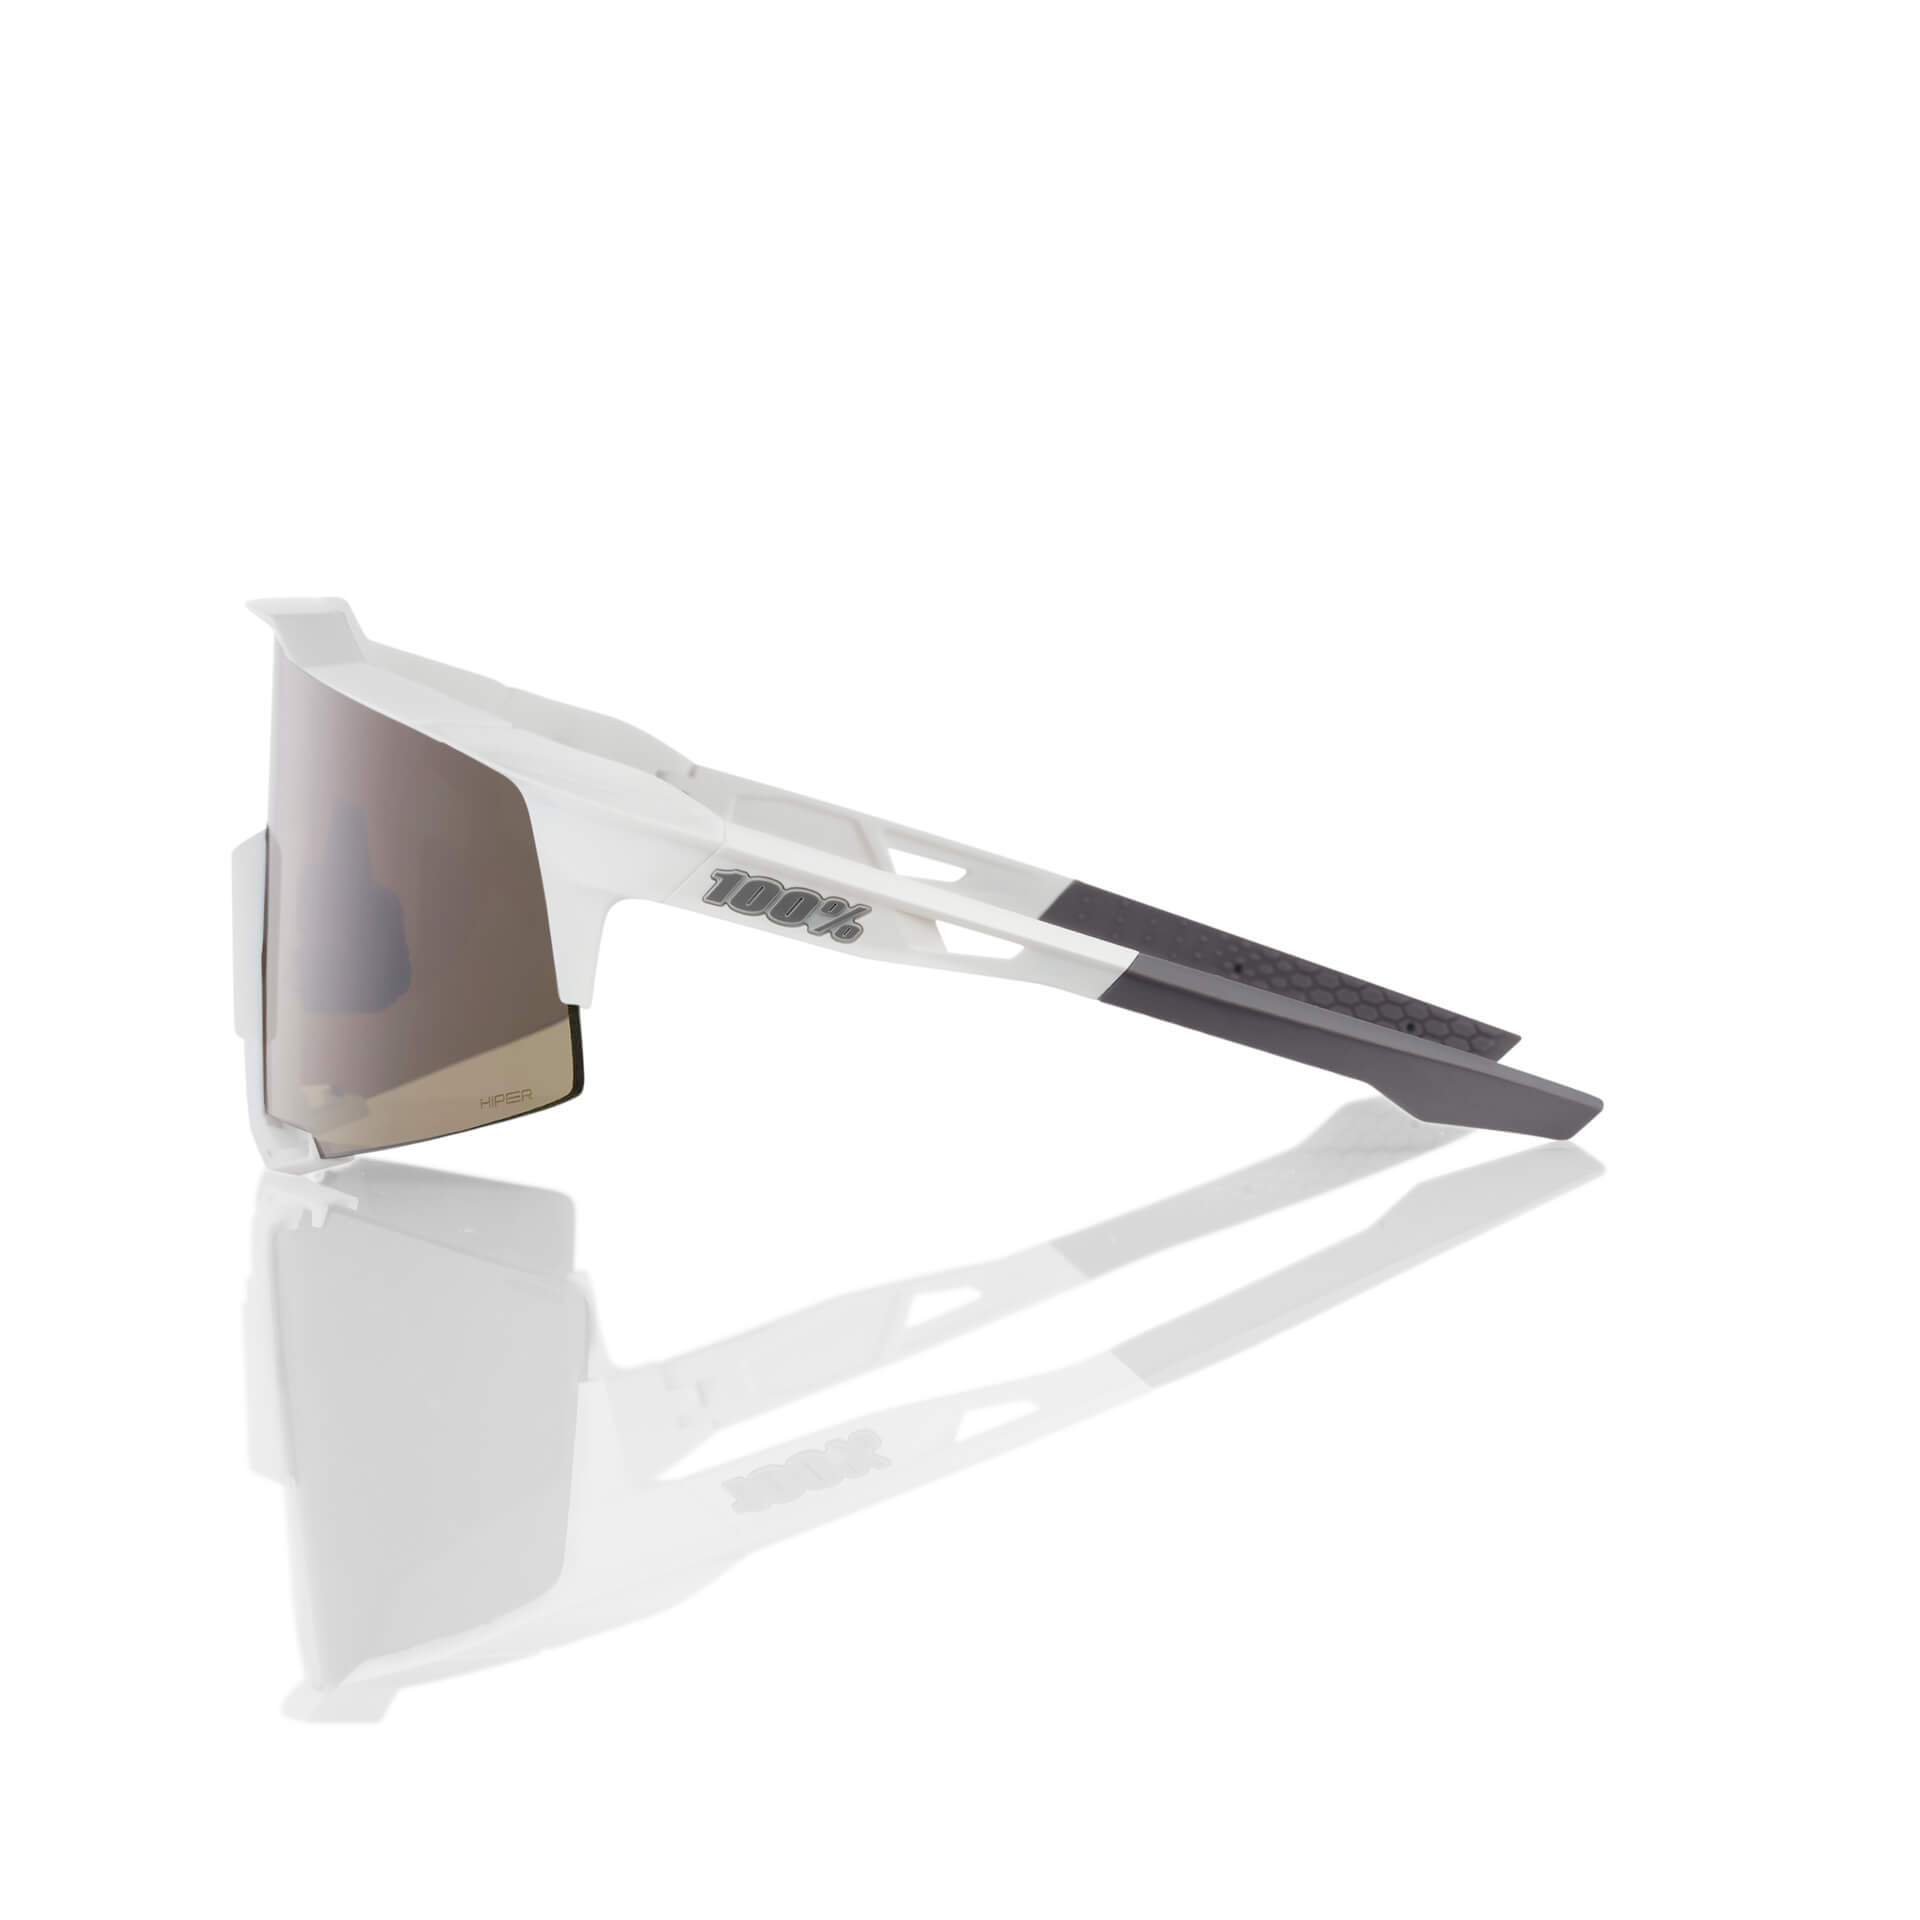 SPEEDCEAFT – Matte White – HiPER Silver Mirror Lens